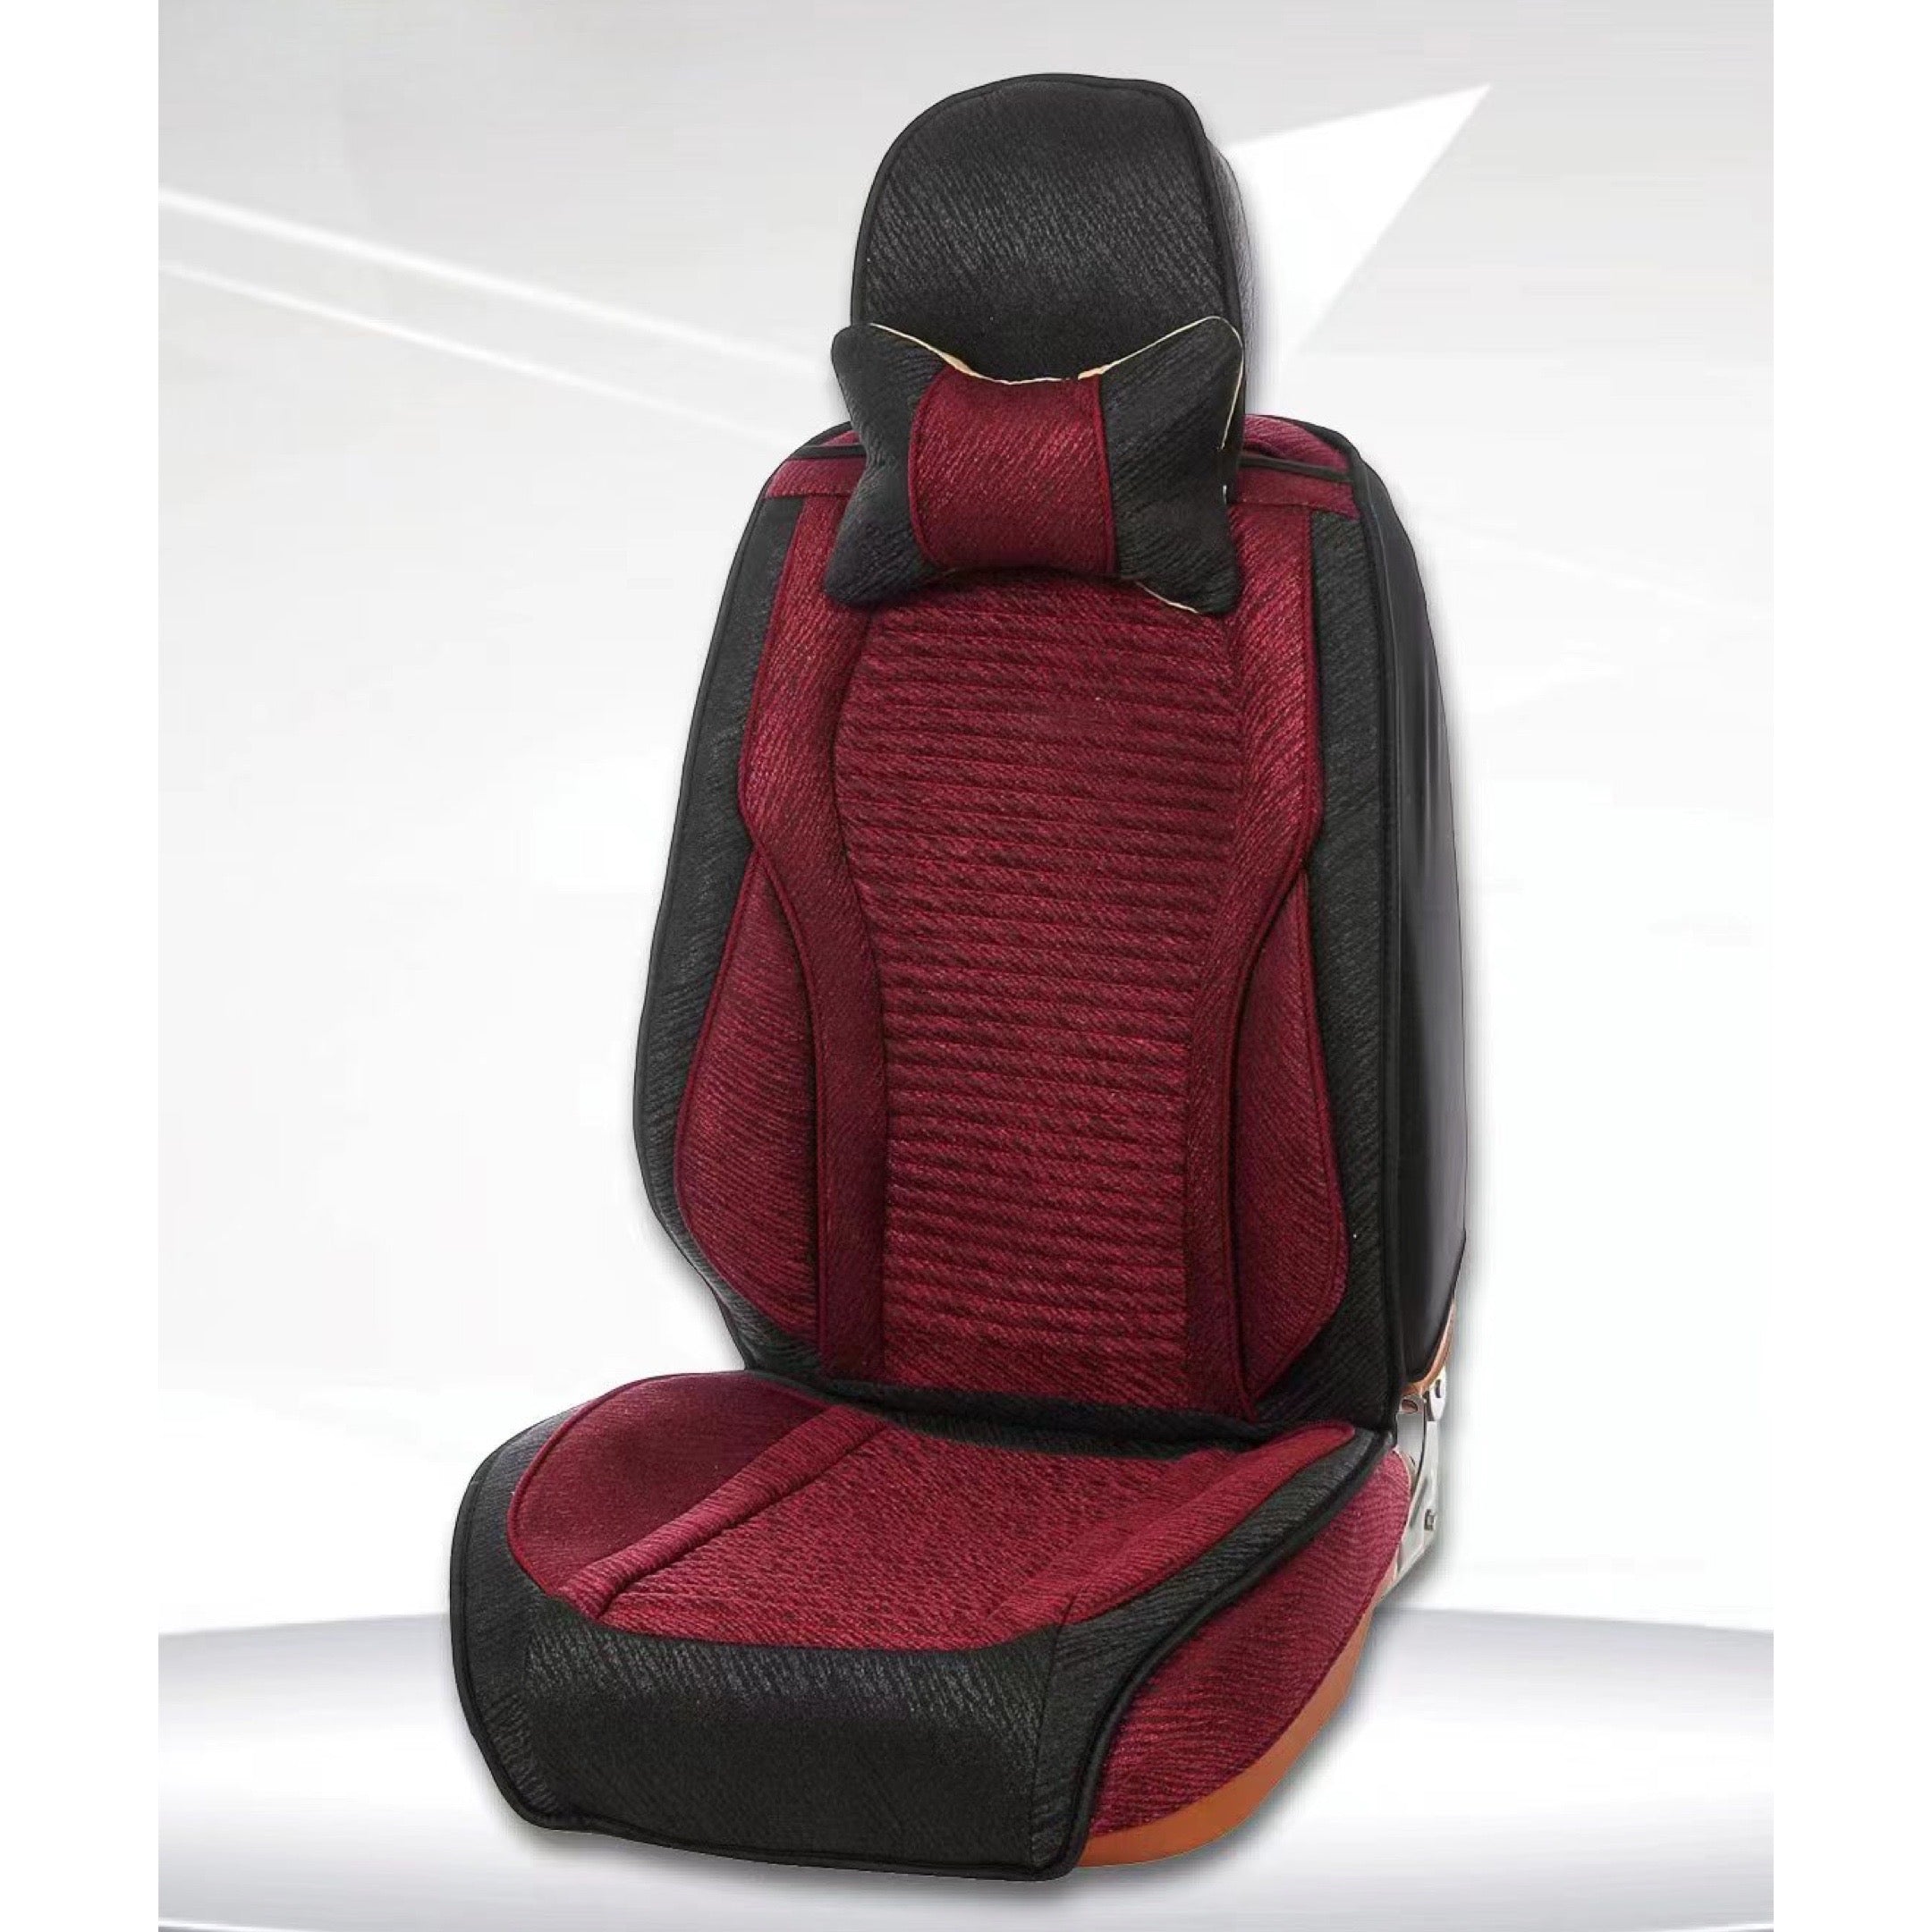 Comfort Fabric Seat Cushions (2 pcs)